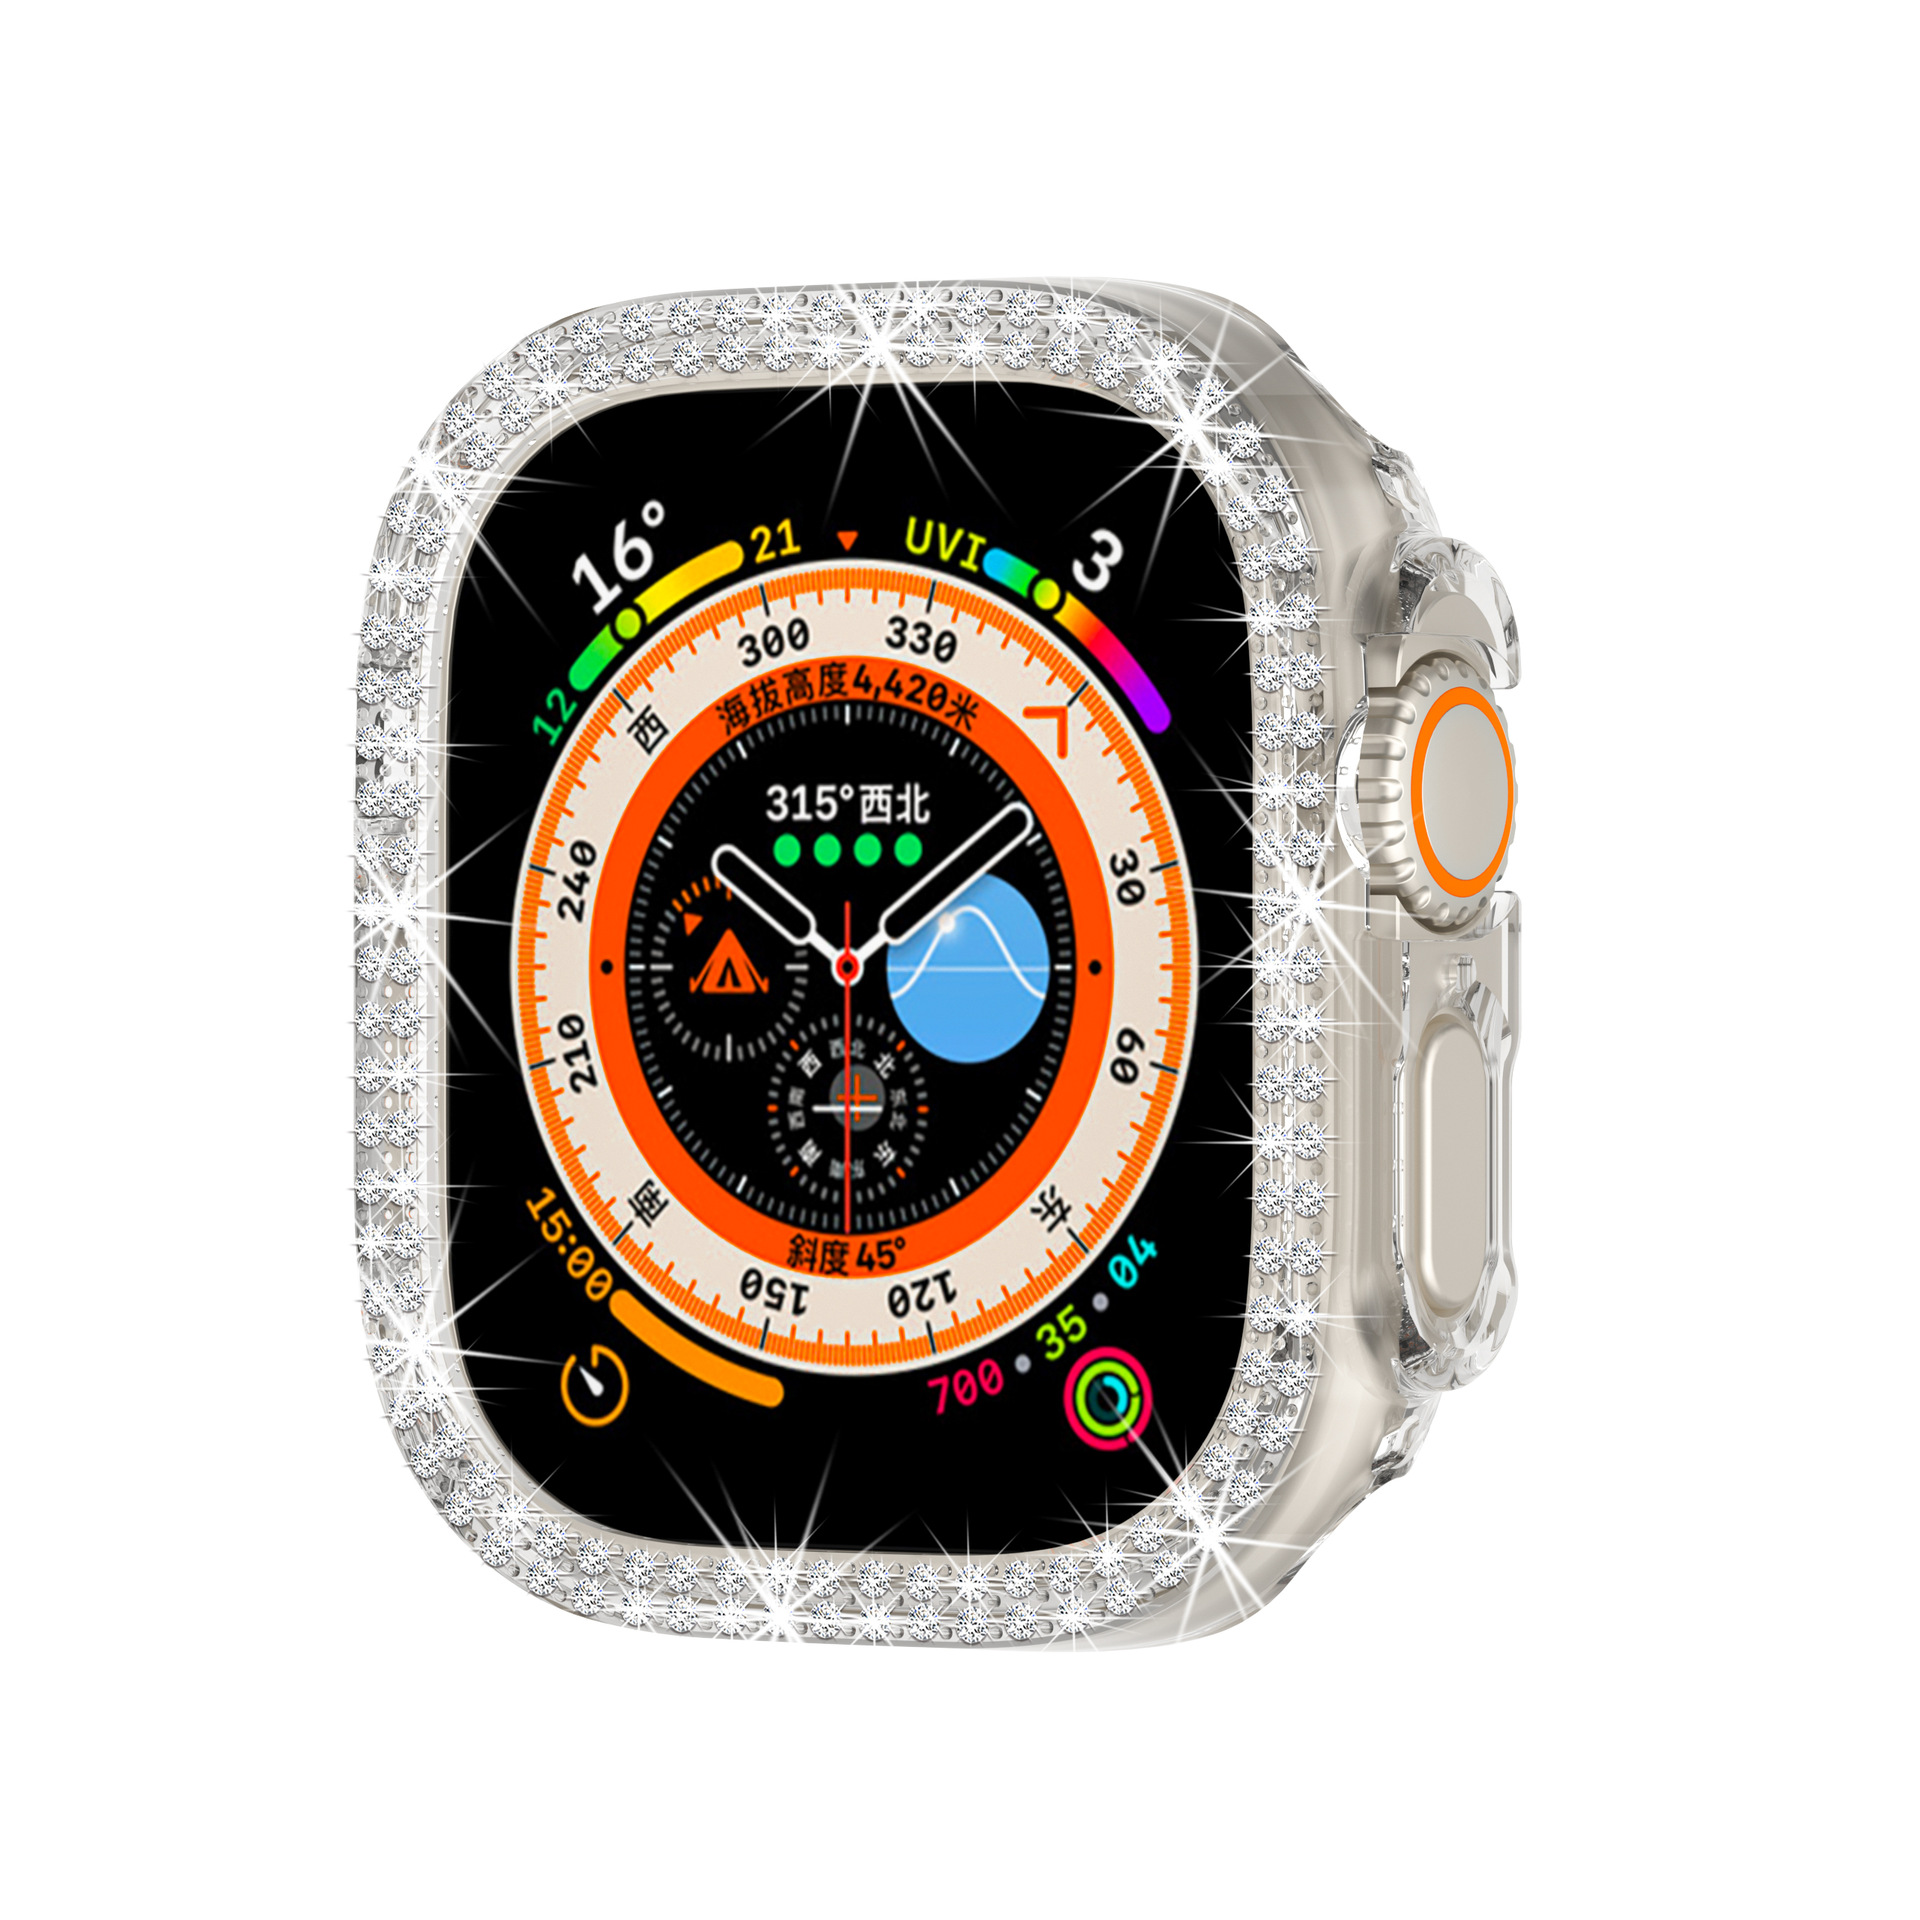 大特価セール アップルウォッチ カバー ケース Apple Watch Ultra 